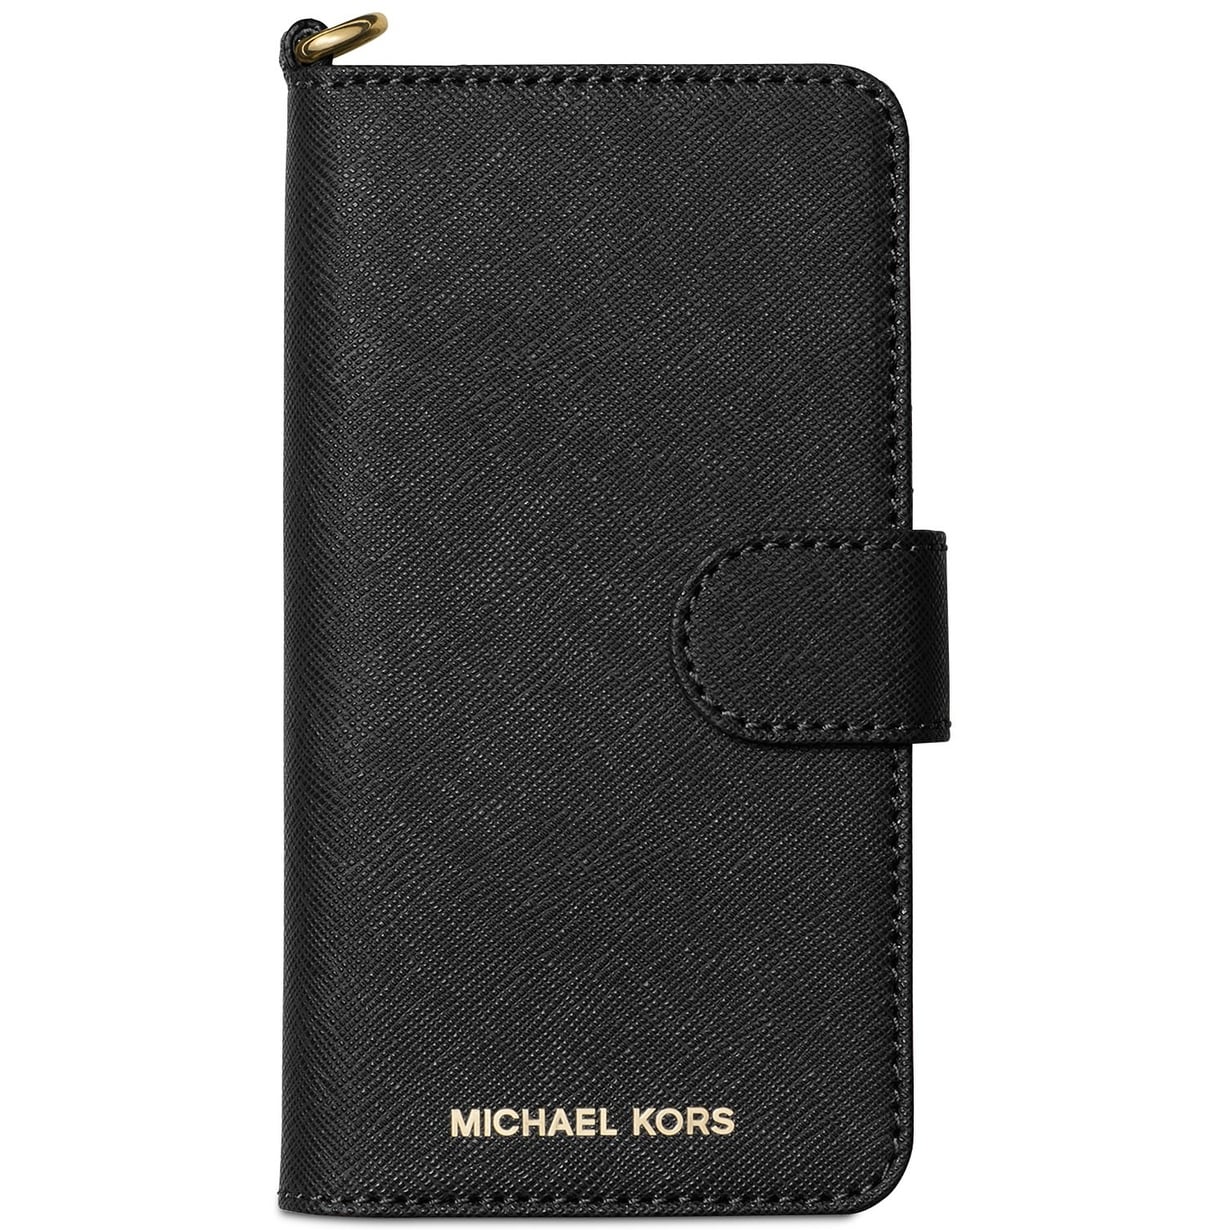 michael kors iphone 6 wallet case